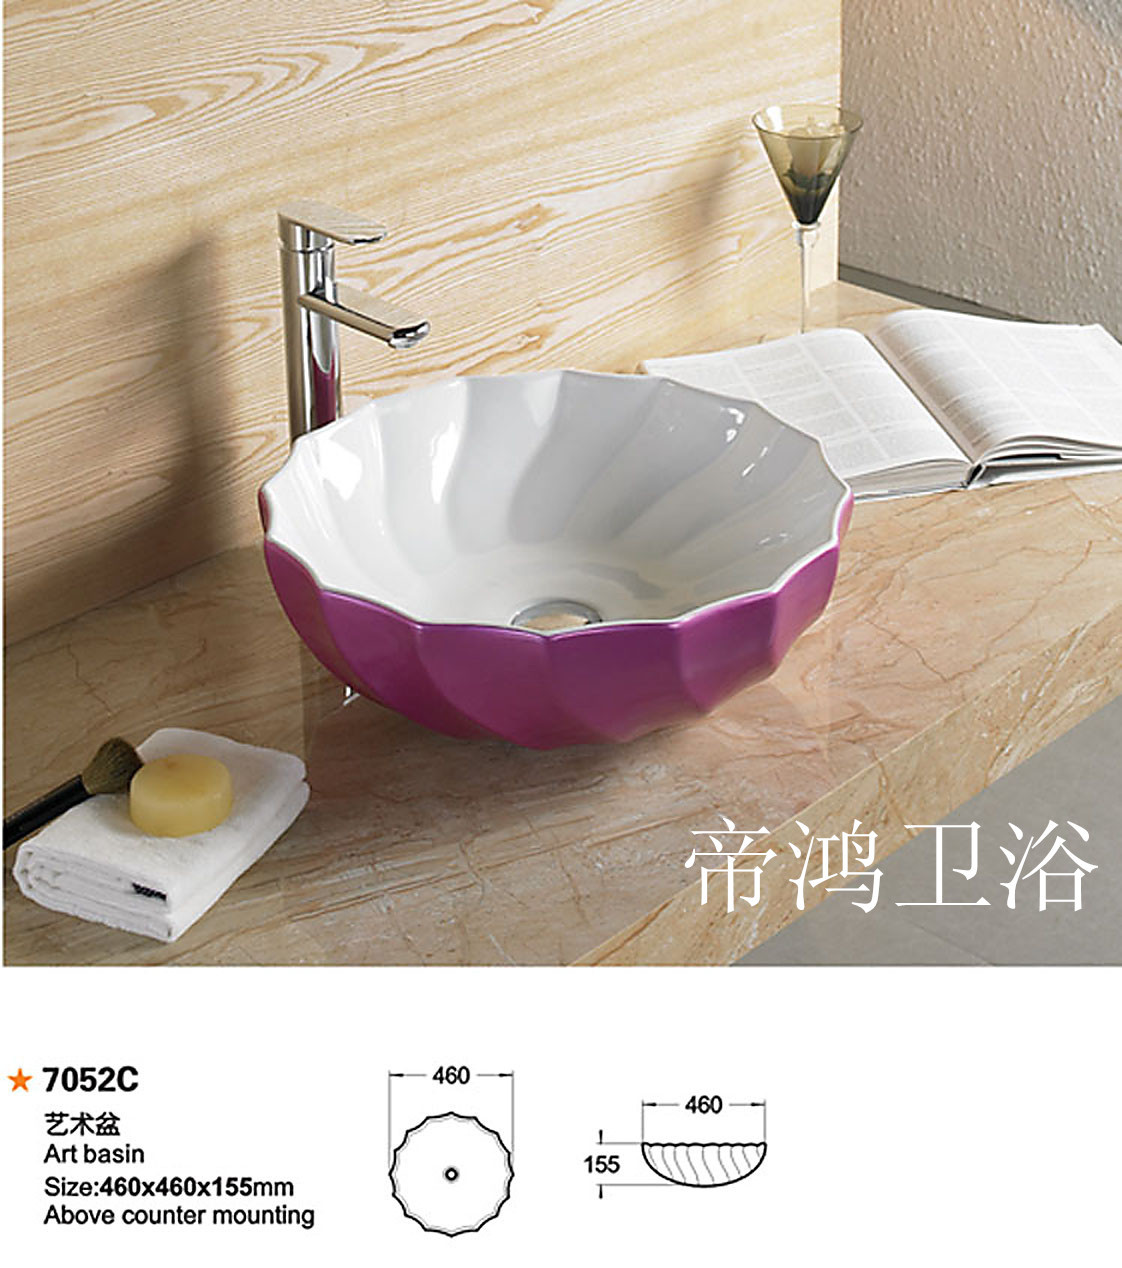 帝鸿卫浴 紫色面盆 高档家庭洁具 7052C 洗手洗面盆 圆形台上盆